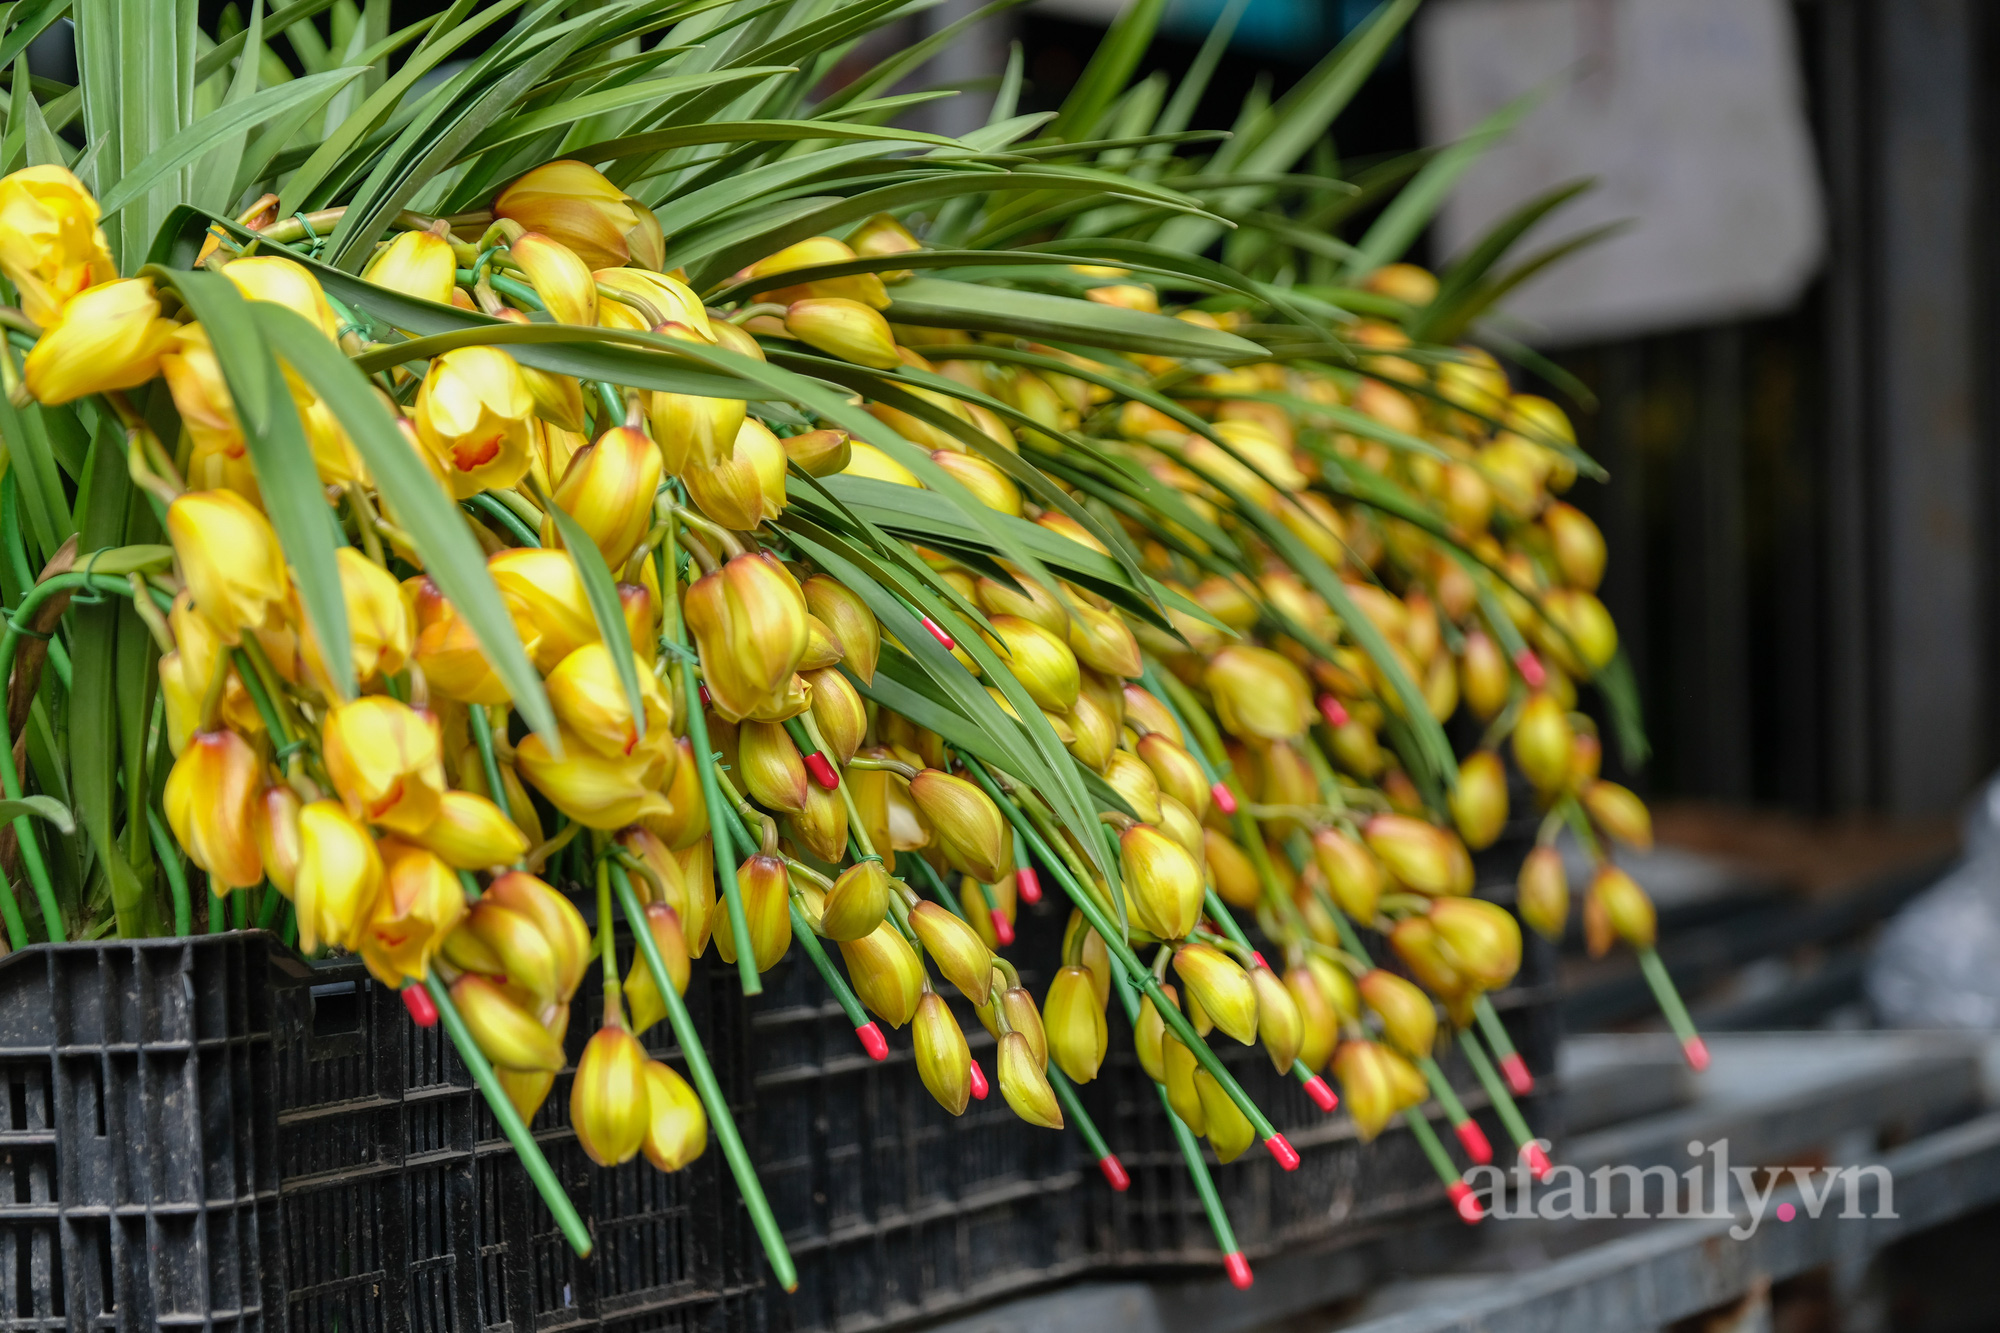 29 Tết đi chợ hoa Quảng Bá: Giá hoa tăng 20% so với ngày thường, mua nhanh 5 cành đào đông cắm đẹp nhà mà hết 2,2 triệu - Ảnh 10.